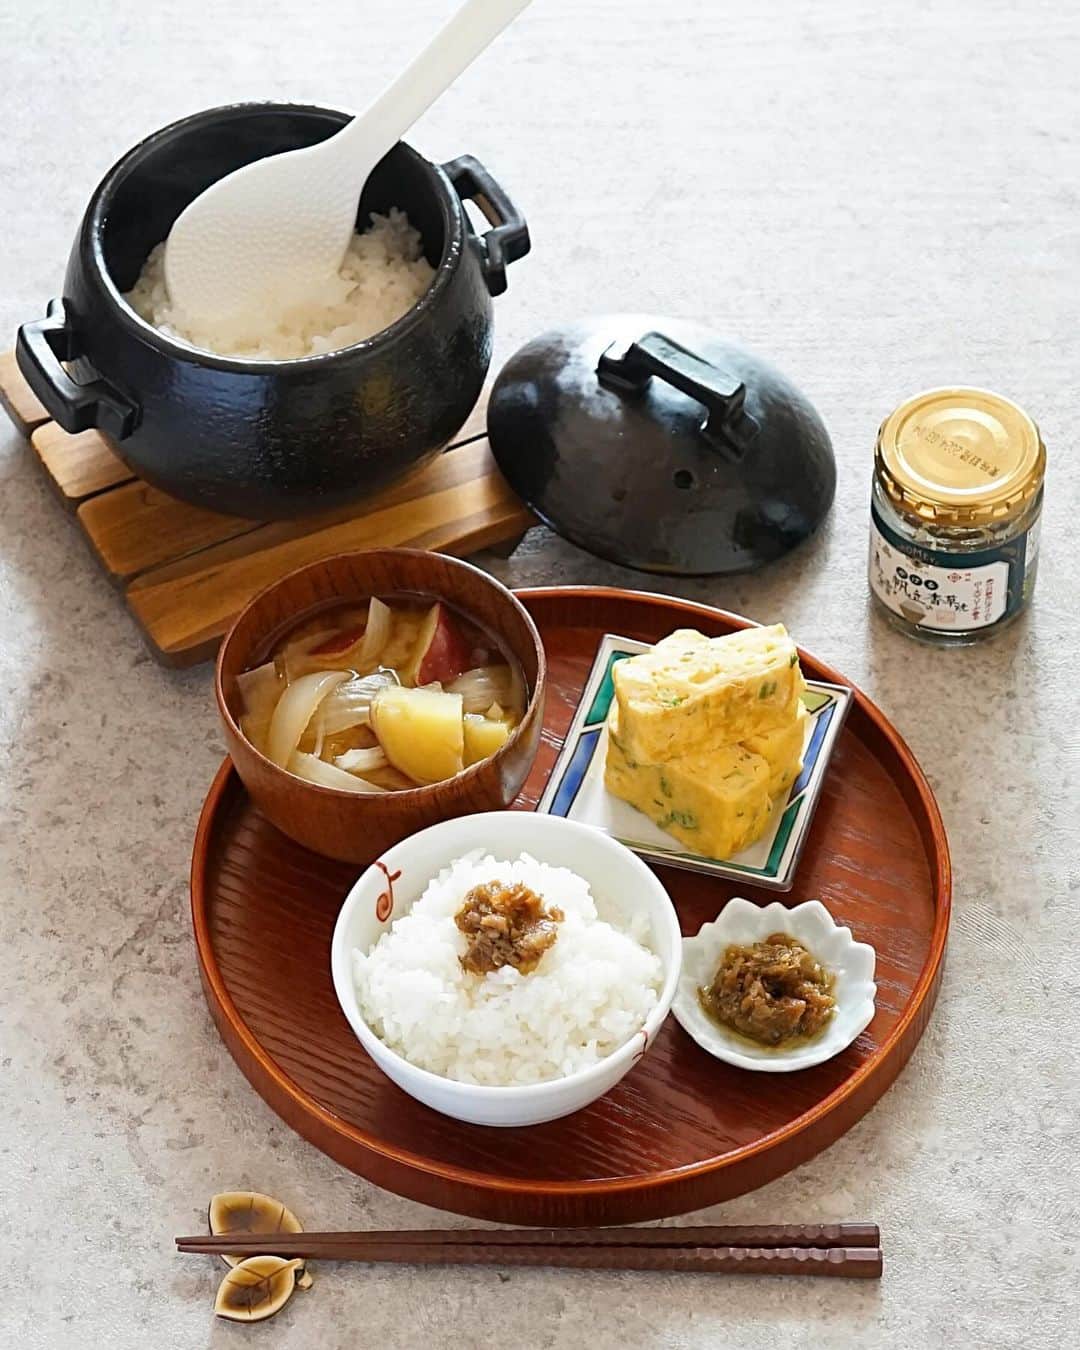 hirokoのインスタグラム：「🌱2023.10.29（日）☀️ ✽.｡.:*・ﾟ #いつもの朝ごはん ⁡ 日曜日の朝 のんびり和で朝ごはん ⁡ menu📝 ▪︎ ごはん（新米いちほまれ） ▪︎ さつま芋と玉ねぎの味噌汁 ▪︎ ごはんのお供（かける真鱈と帆立の香草焼き） ▪︎ ねぎ入りたまご焼き ⁡ ⁡ @akomeya_tokyo #アコメヤ さんの 2023年の新米「あきたこまち」「いちほまれ」 そしてごはんのお供 「かける真鱈と帆立の香草焼き」 ⁡ 今日のお米は🌾は「いちほまれ」 やっぱり新米美味しいな〜 ツヤツヤの炊きたてごはんがあれば もぉ〜おかず要らないよね 朝からごはん2膳食べちゃった💦 ⁡ ごはんのお供「かける真鱈と帆立の香草焼き」は タイムやローズマリーのハーブが香る 和洋どちらにも合うお供です パンにのせたりパスタにも合うと思う... ⁡ ⁡ 2年前に次男から誕生日プレゼントに貰った AKOMEYA TOKYOさんオリジナルの 『 #おひつ炊飯鍋 』1合炊き（おひとり様用） 今回は新米2合だったので別鍋で炊きました これ「おひつ炊飯鍋」名前の通り 「おひつ」としても使えるの 電子レンジOKだから冷めたらそのまま 電子レンジで温められる便利！ ⁡ ⁡ アコメヤさんでは 10月13日〜11月16日まで新米祭り開催中 全国から美味しいお米が20種類以上 毎年厳選した銘柄のお米をセレクト ごはんのお供もたくさん揃ってます チェックしてみてね🤗 ⁡ ⁡ ⁡ ⁡ .........The end 🍚🥢 #PR #akomeya #akomeyatokyo #アコメヤのおいしい輪 #新米祭2023 #hiroponの朝ごはん #朝ごはん #朝時間 #朝食 #和食ごはん #おうちごはん #おうちごはん通信 #おうちごはんLover #おうち時間  #フーディーテーブル #マカロニメイト #デリミア #バランスの良い食事 #和食 #和食ごはん #snapdish #locari_kitche #macaroni #lin_stagrammer ・」